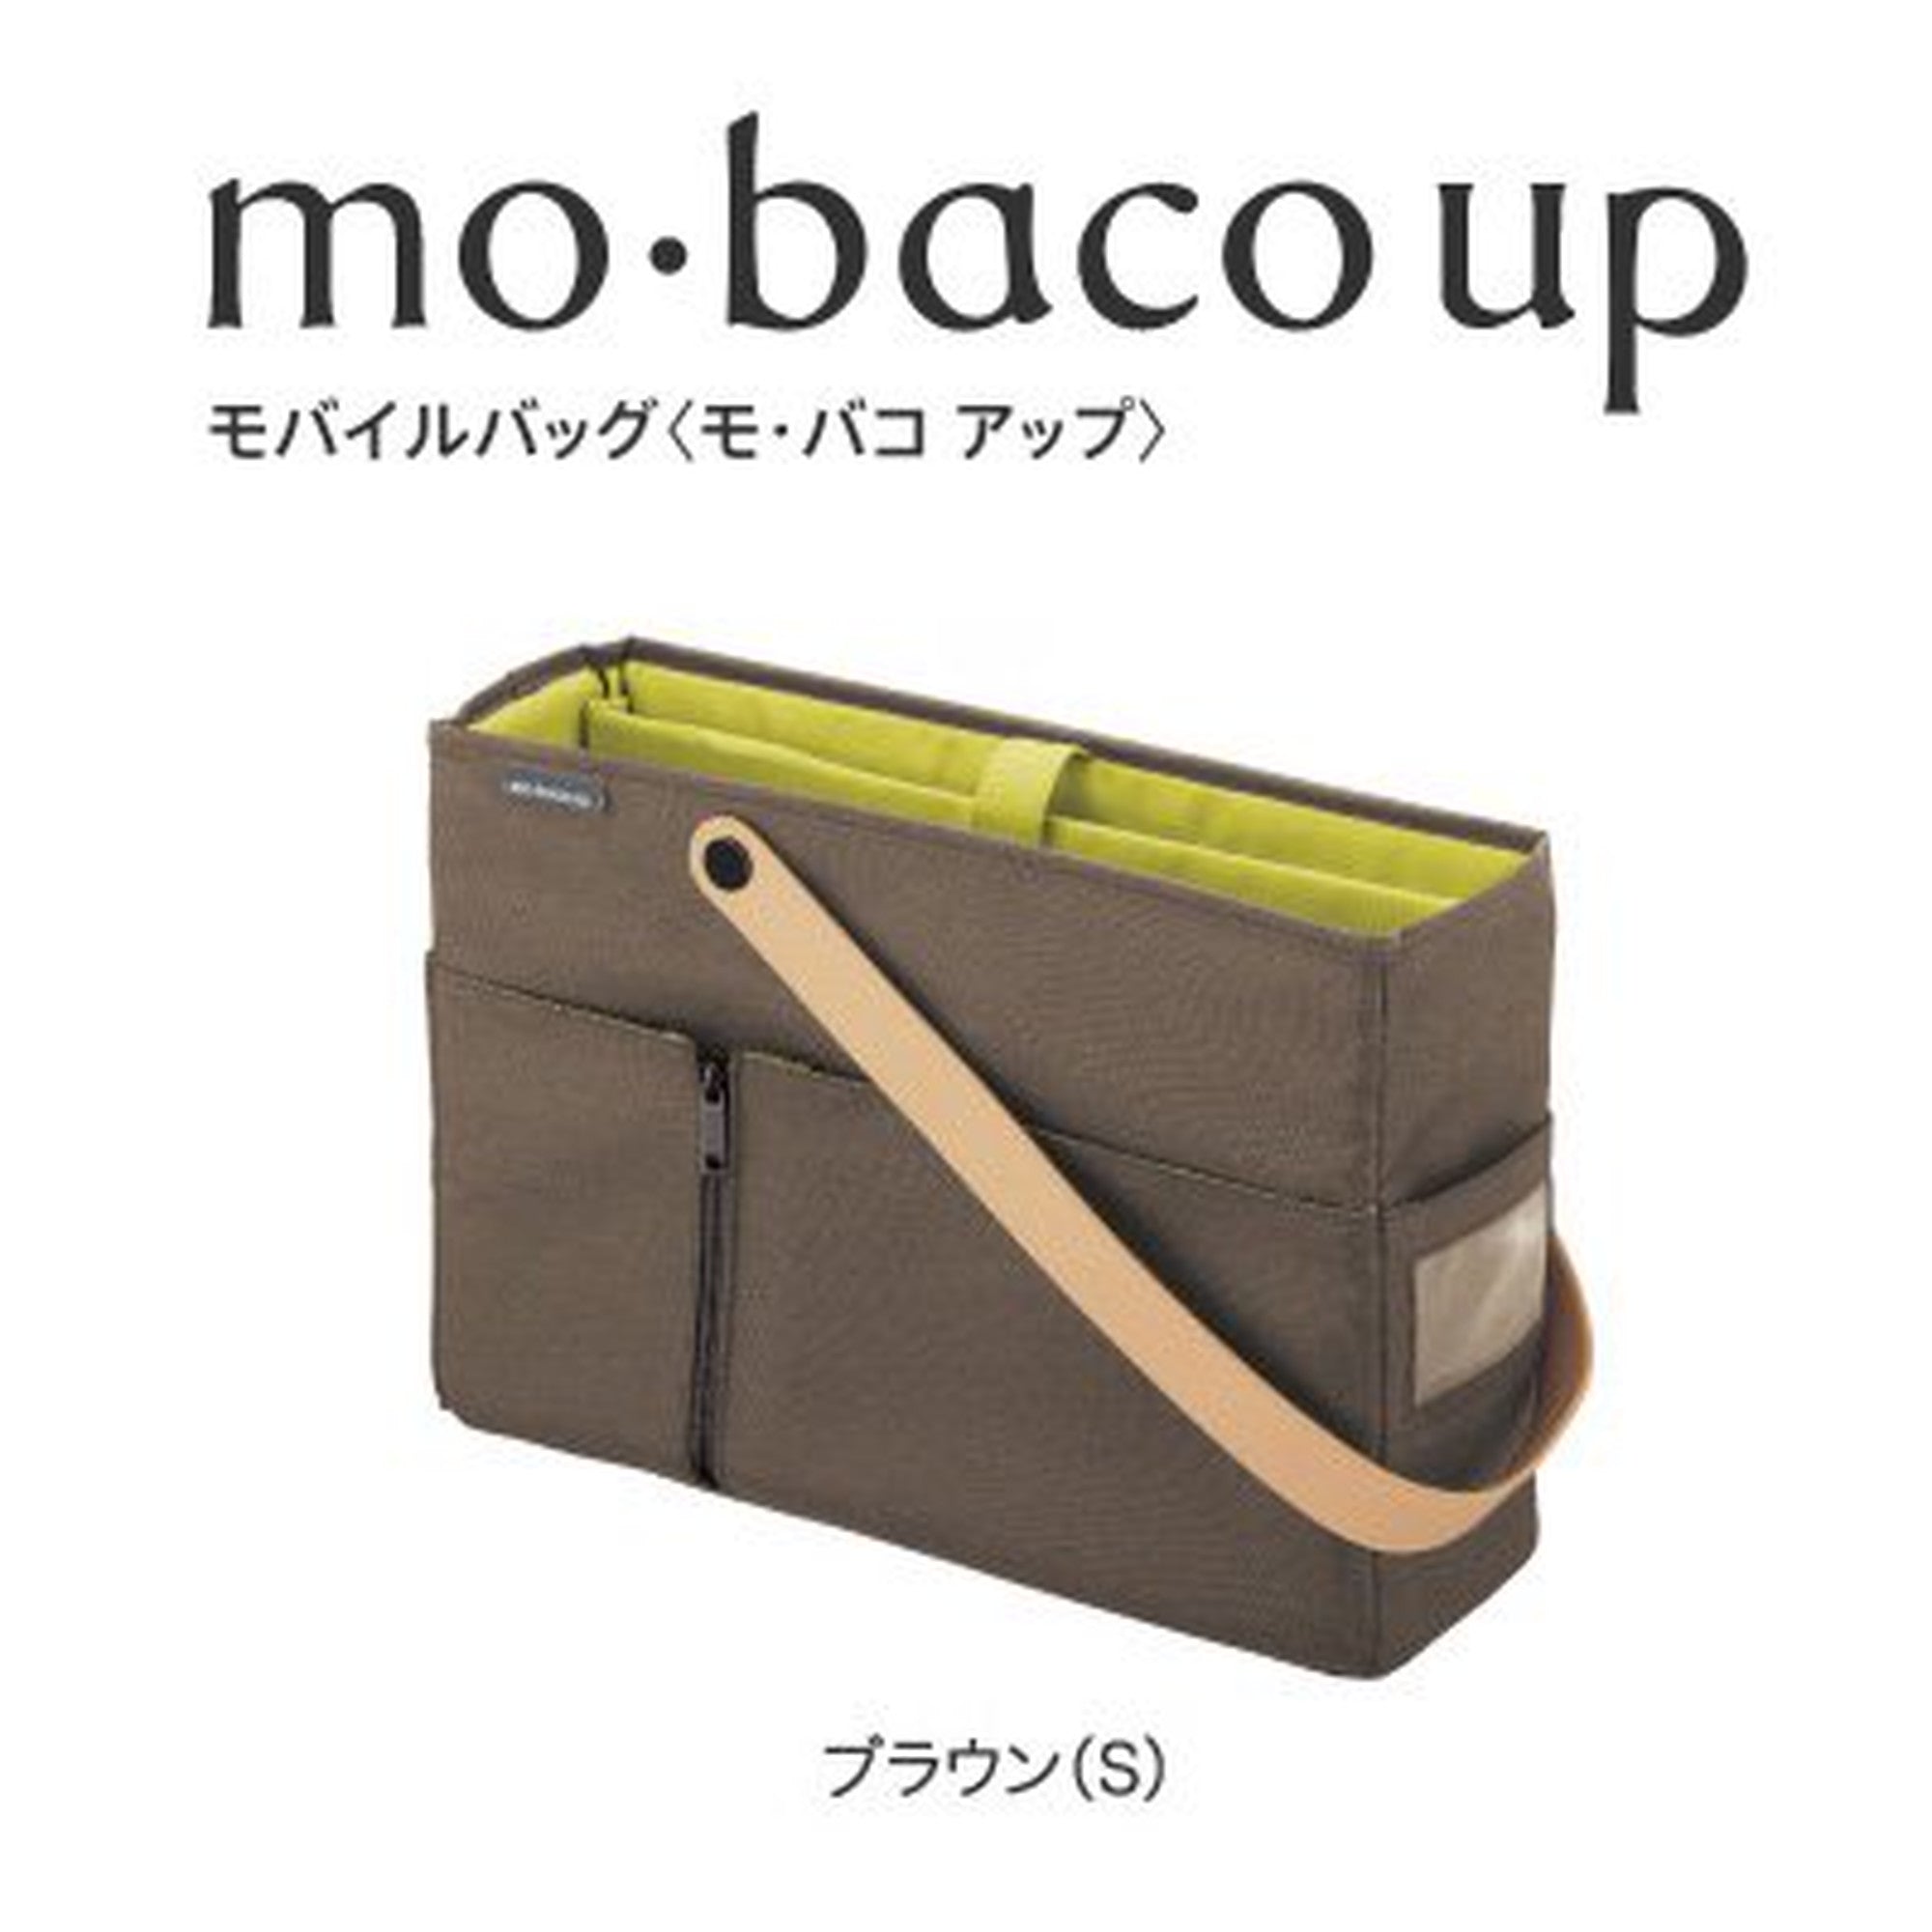 コクヨ モバイルバッグ mo・baco up - バッグ